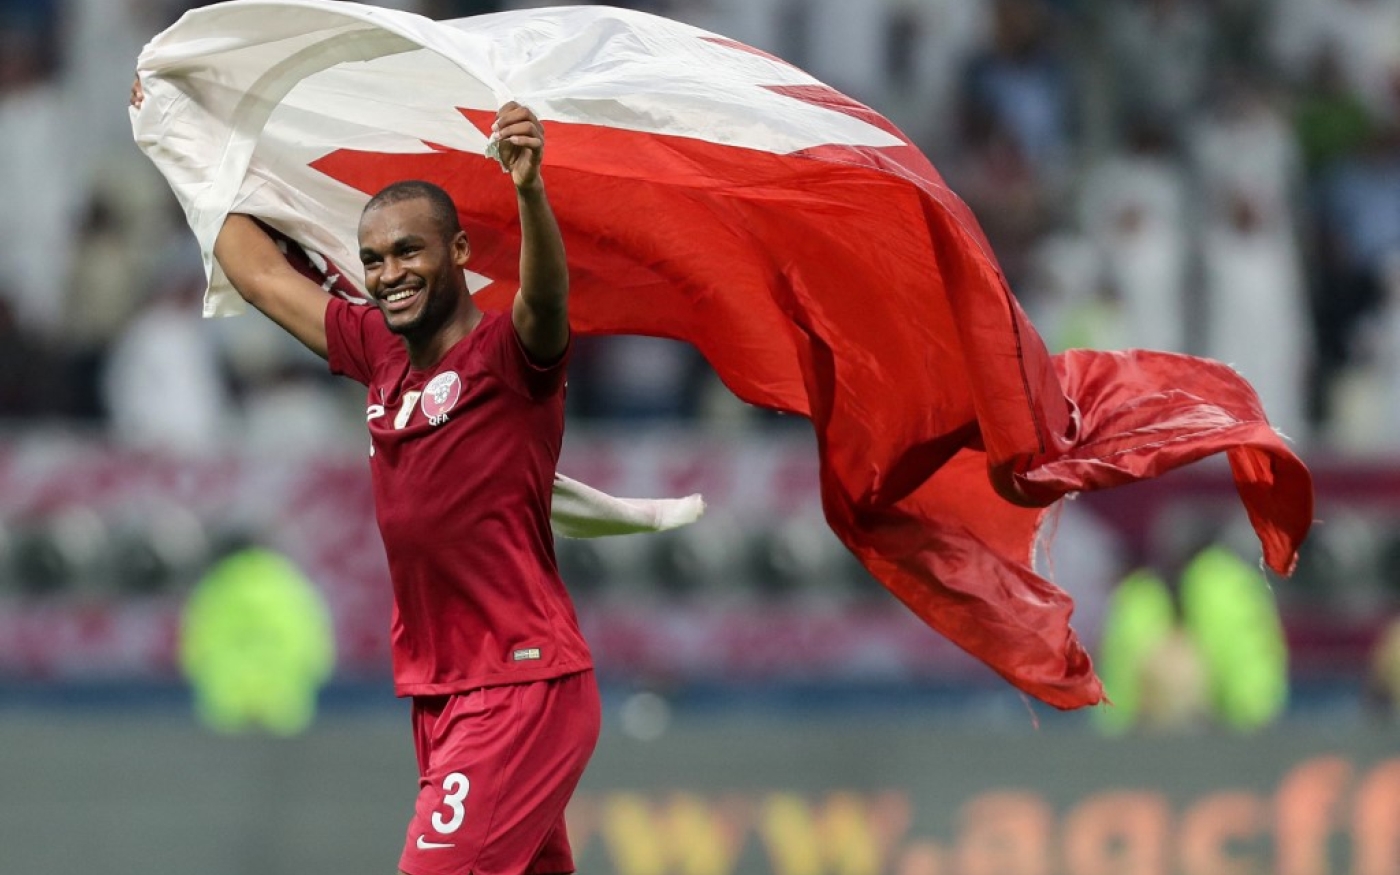 Le défenseur du Qatar Abdelkarim Hassan brandit le drapeau de son pays après la victoire de son équipe lors de la Coupe du golfe arabe entre le Qatar et les EAU, le 2 décembre 2019 (AFP/Karim Jaafar)